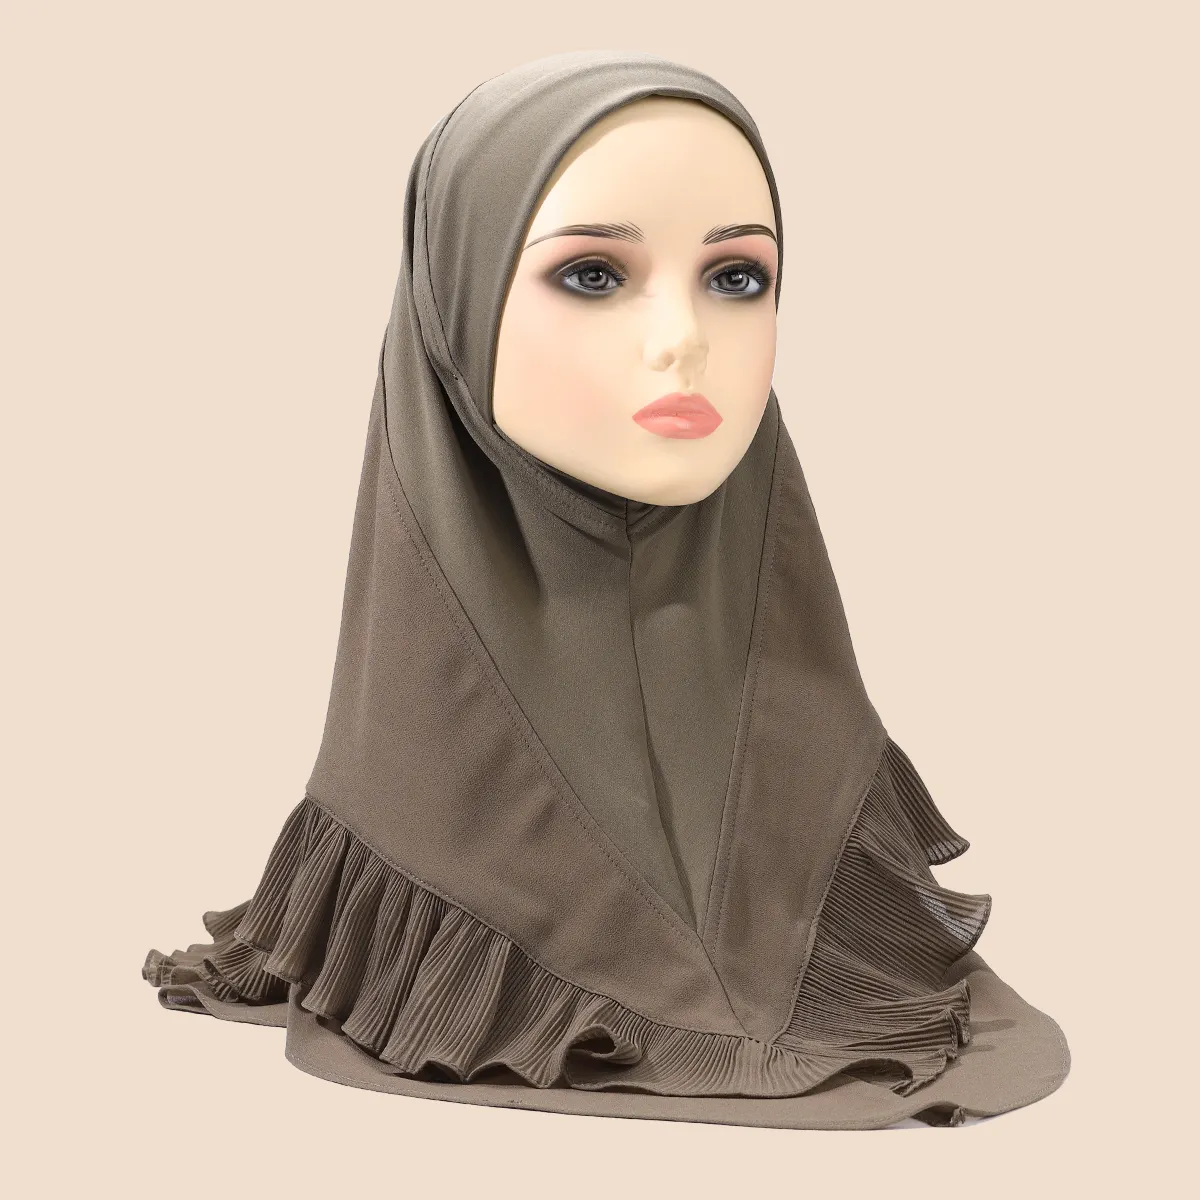 อิสลามทันทีผ้าโพกหัวชีฟองเร้าใจจีบกริช 2 ชั้น bonnets ฮิญาบอาหรับมุสลิมผู้หญิงห่อศีรษะผ้าพันคอ